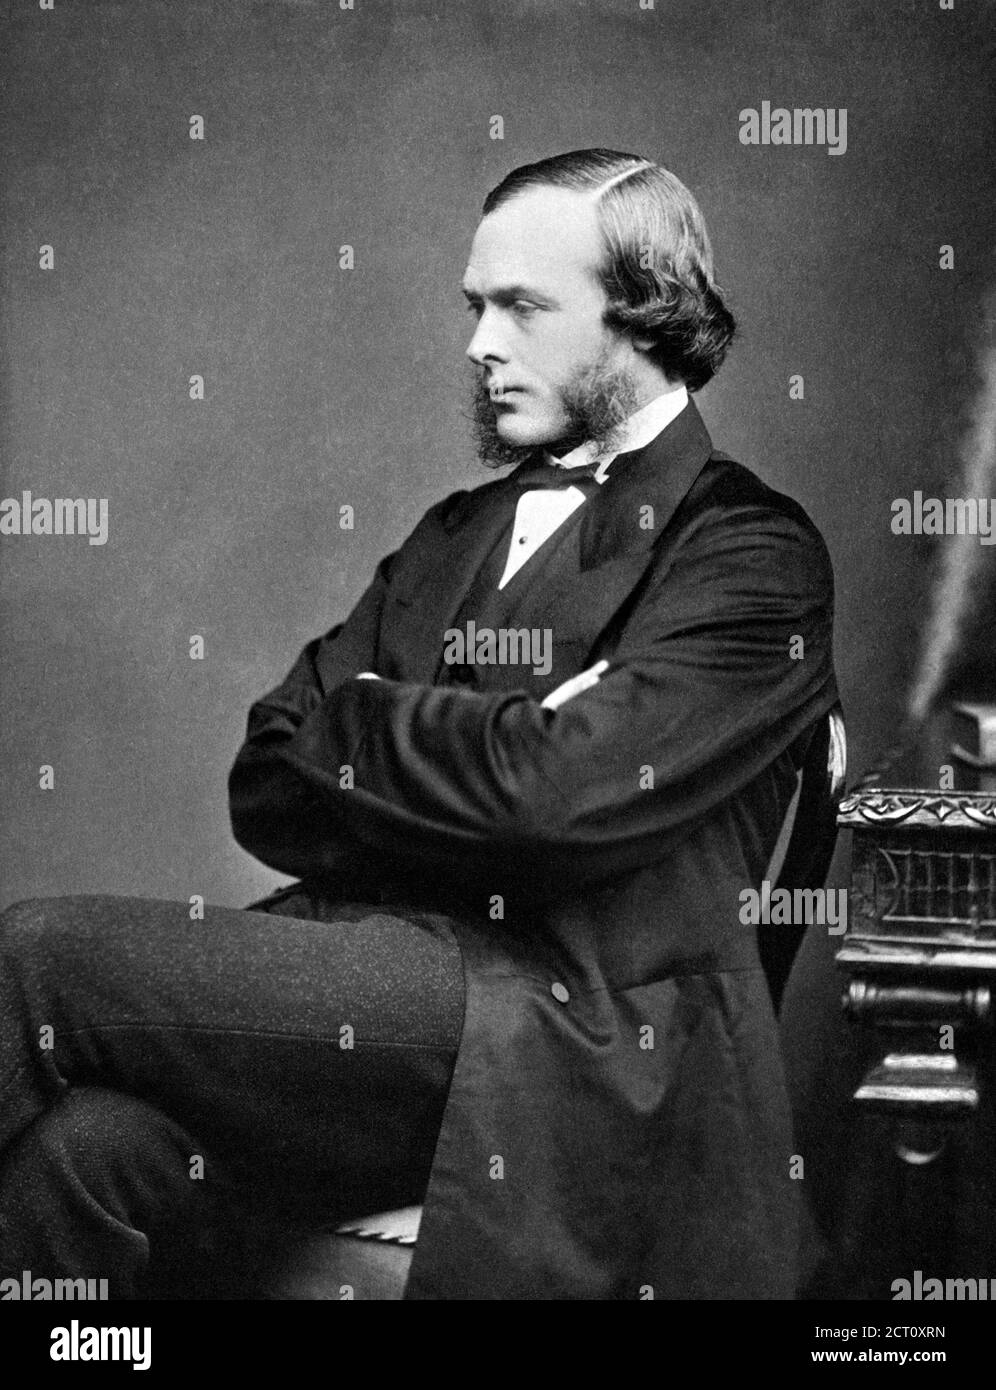 Joseph Lister. Portrait du chirurgien britannique, Joseph Lister, 1er baron Lister (1827-1912), photographie de Thomas Annan, vers 1860. Lister était un pionnier de la chirurgie antiseptique. Banque D'Images